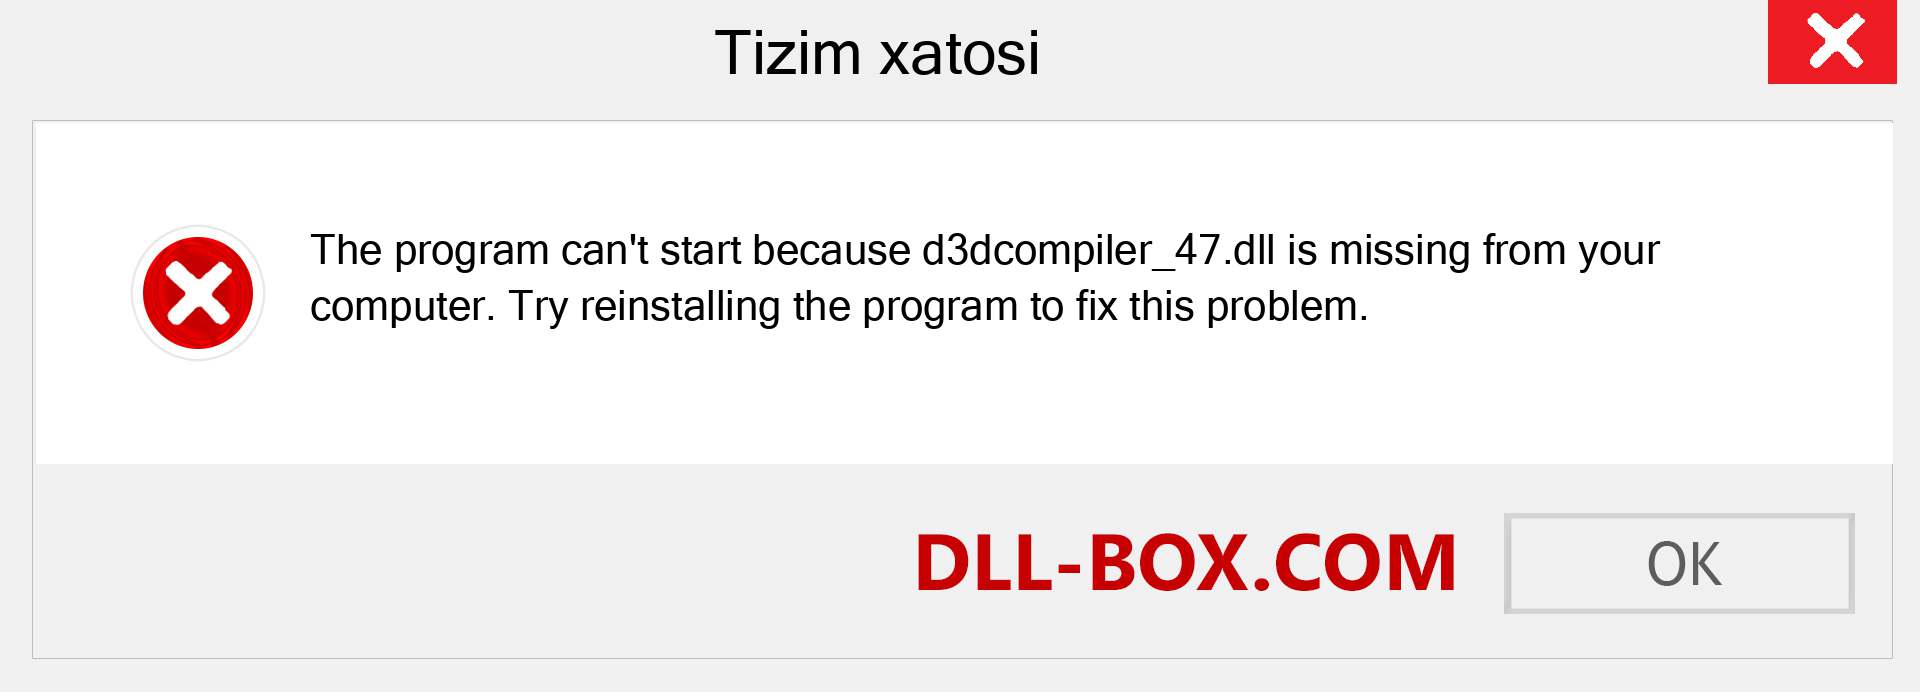 d3dcompiler_47.dll fayli yo'qolganmi?. Windows 7, 8, 10 uchun yuklab olish - Windowsda d3dcompiler_47 dll etishmayotgan xatoni tuzating, rasmlar, rasmlar